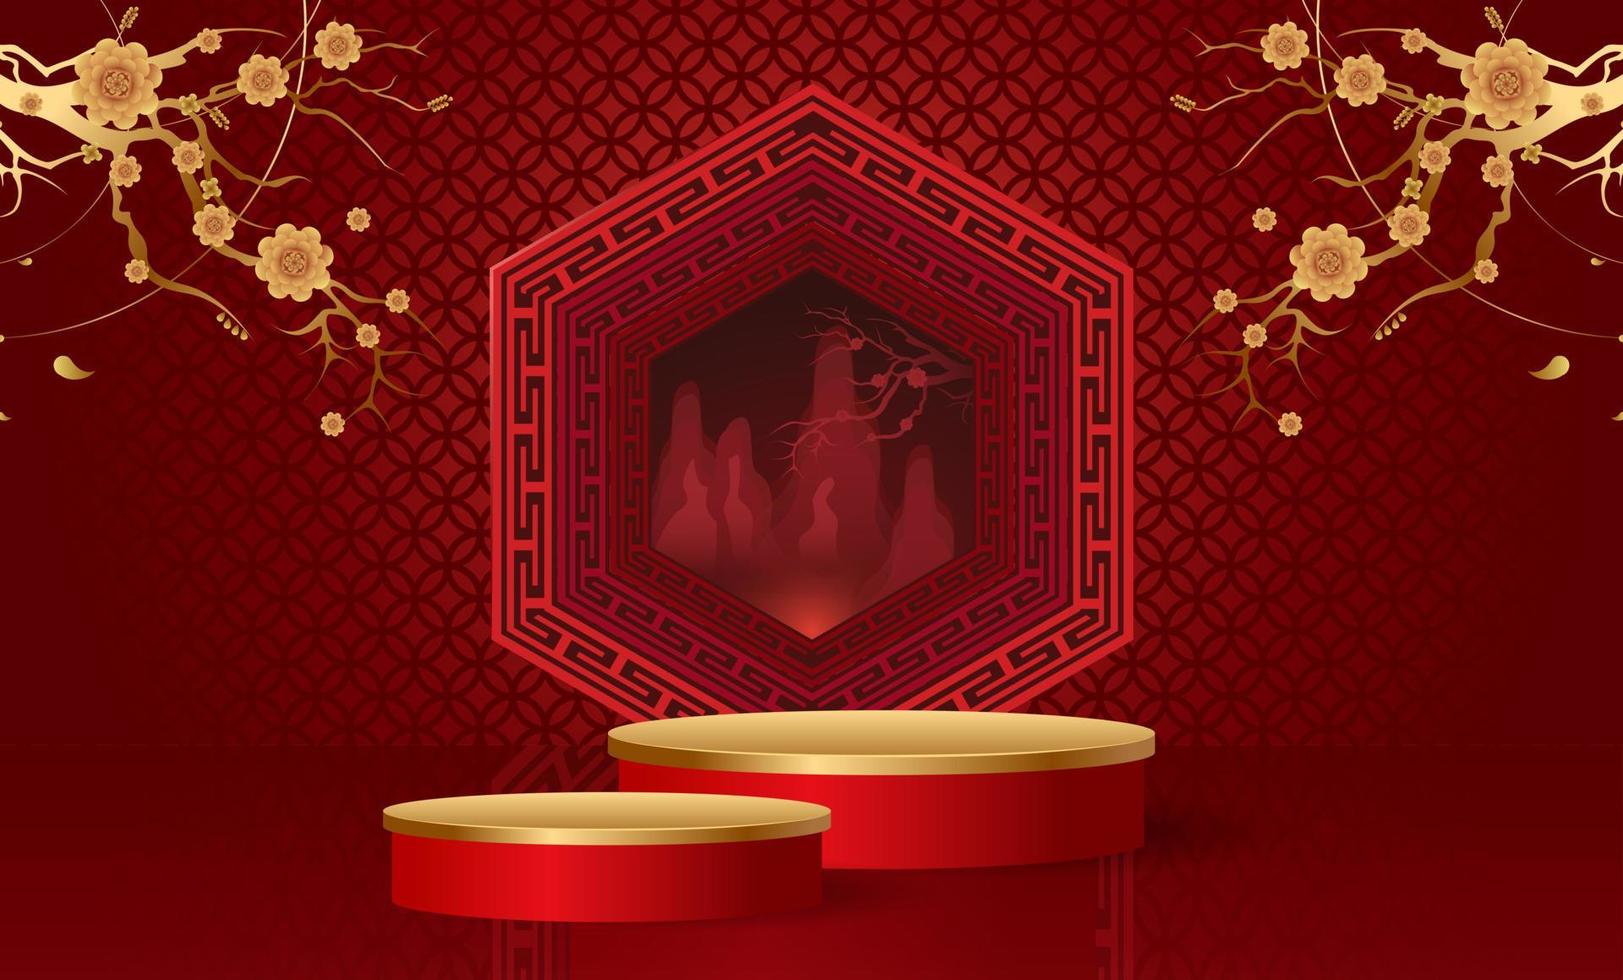 podium och bakgrund för kinesiskt nyår, kinesiska festivaler, midhöstfestivalen, blomma och asiatiska element på bakgrund. vektor